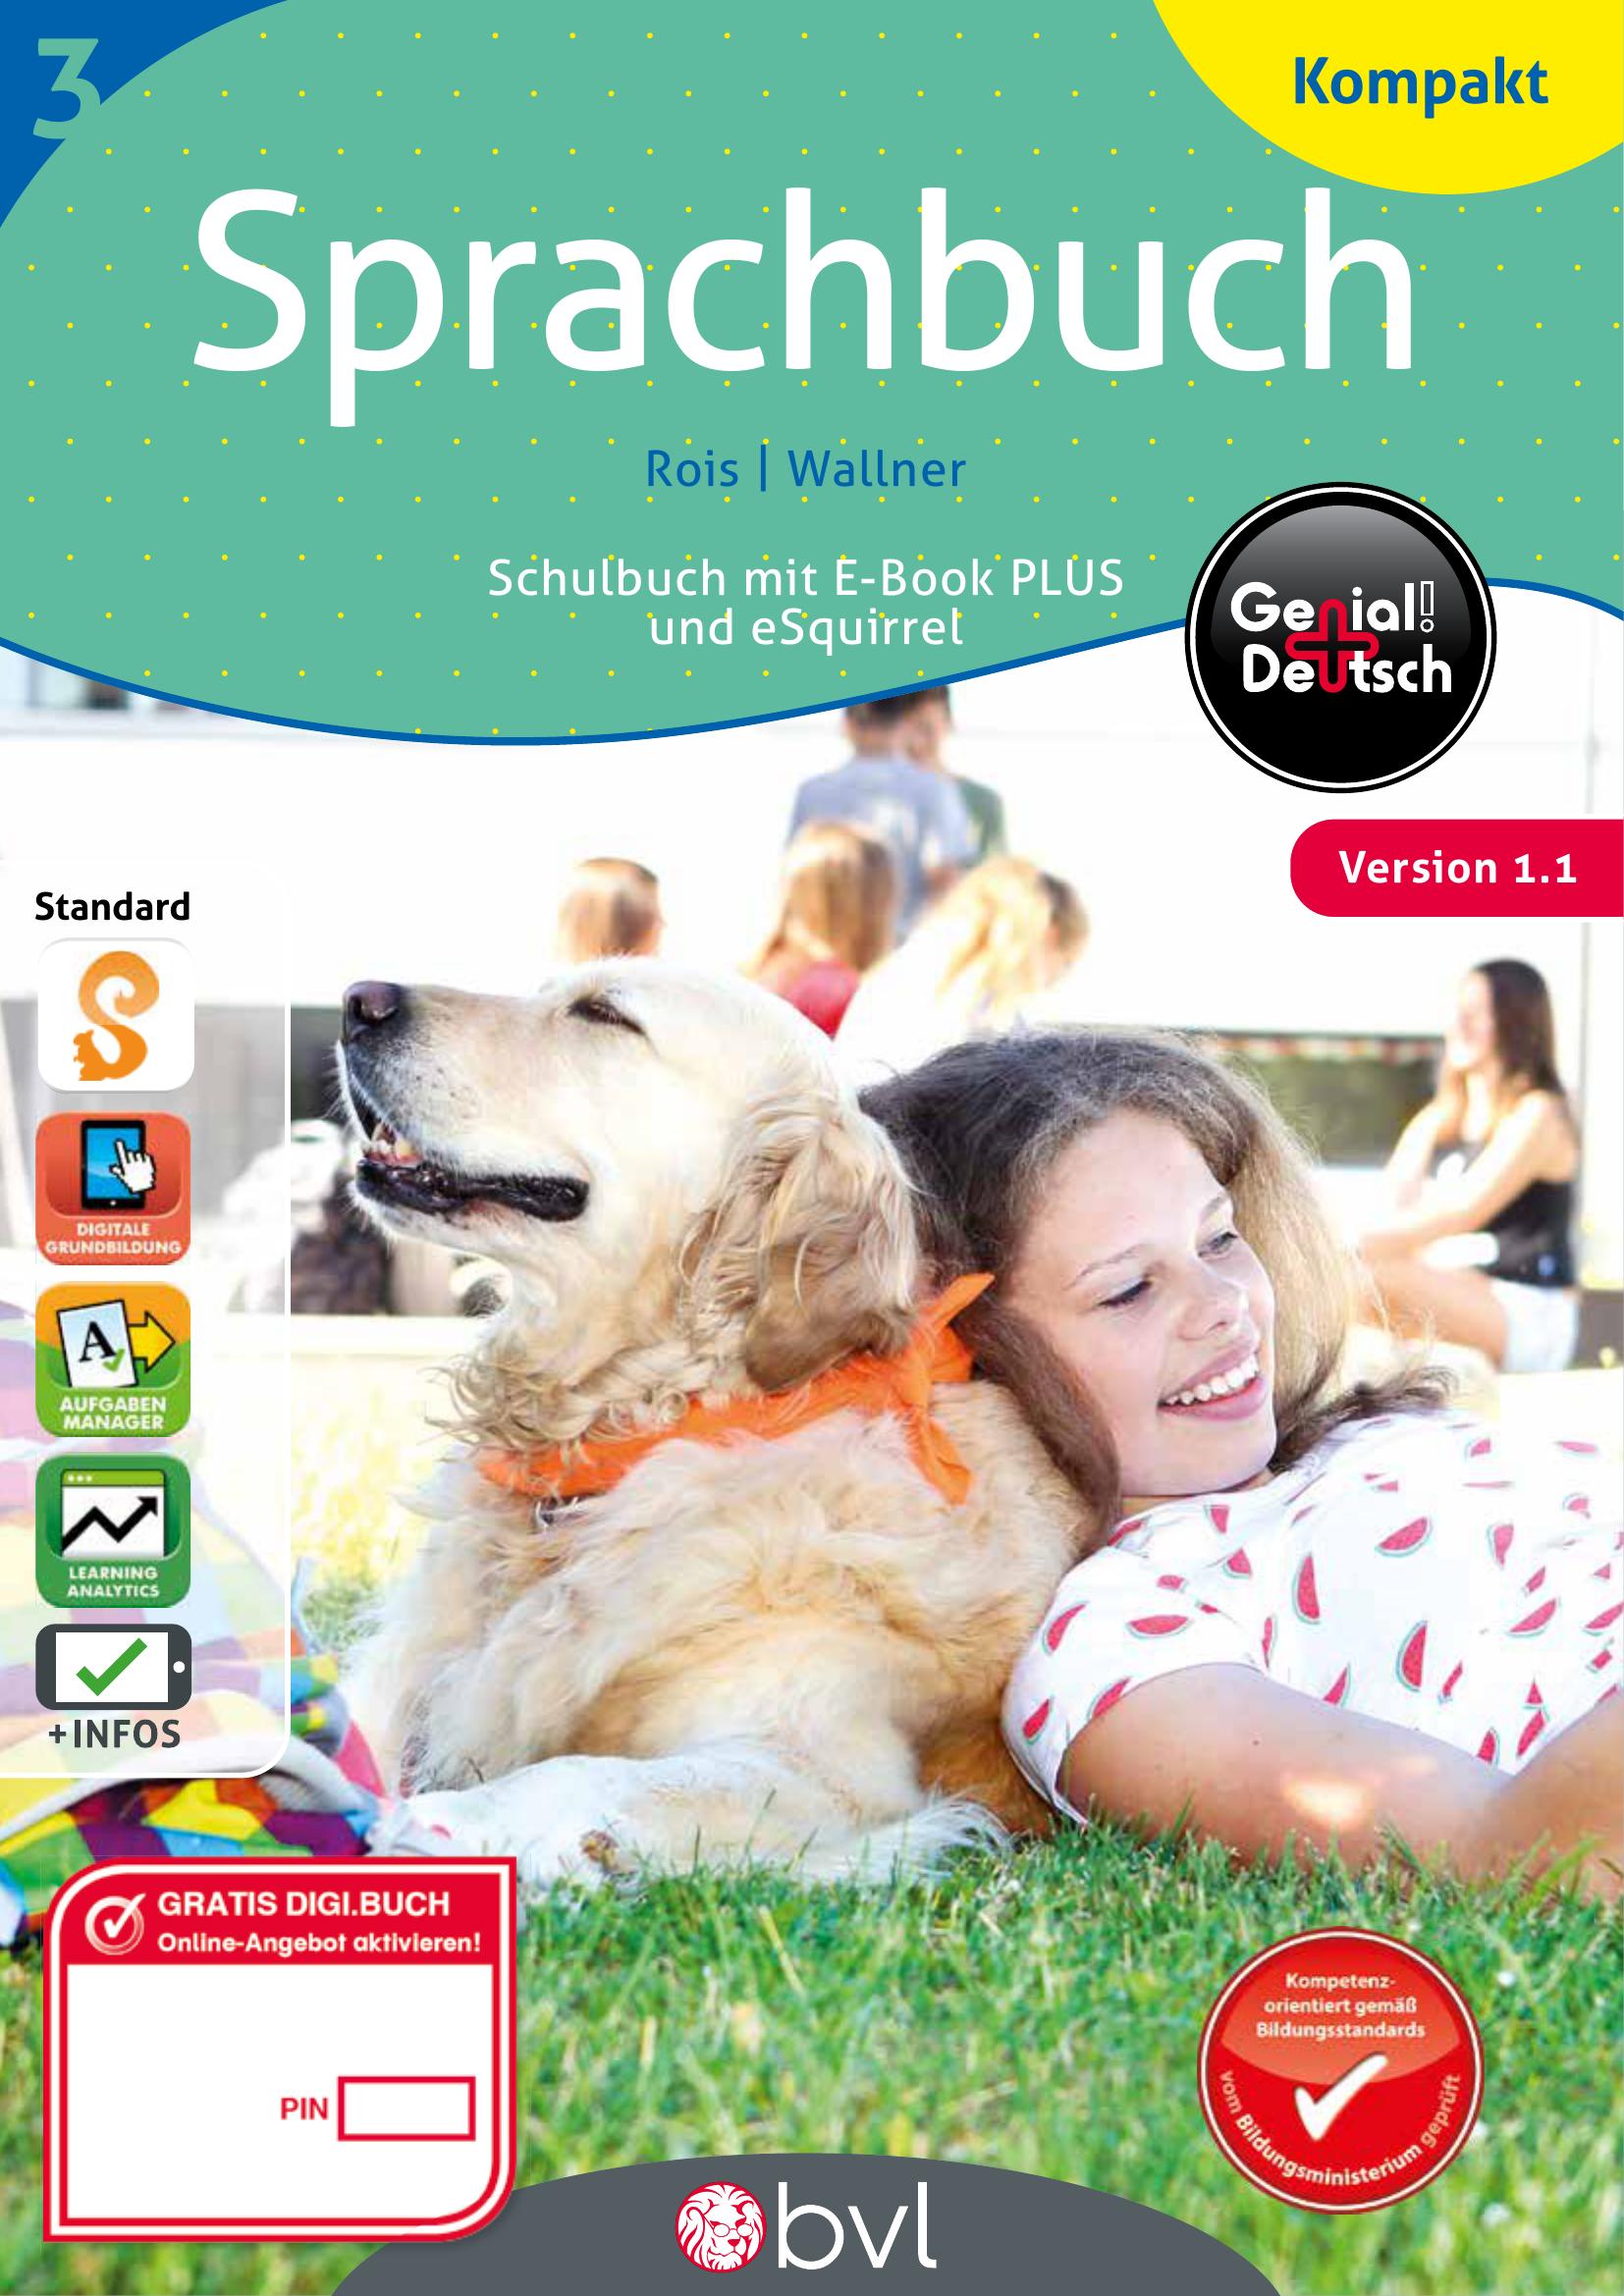 Genial! Deutsch Sprachbuch Kompakt 3 IKT v1.2 PLUS-Lizenz mit eSquirrel